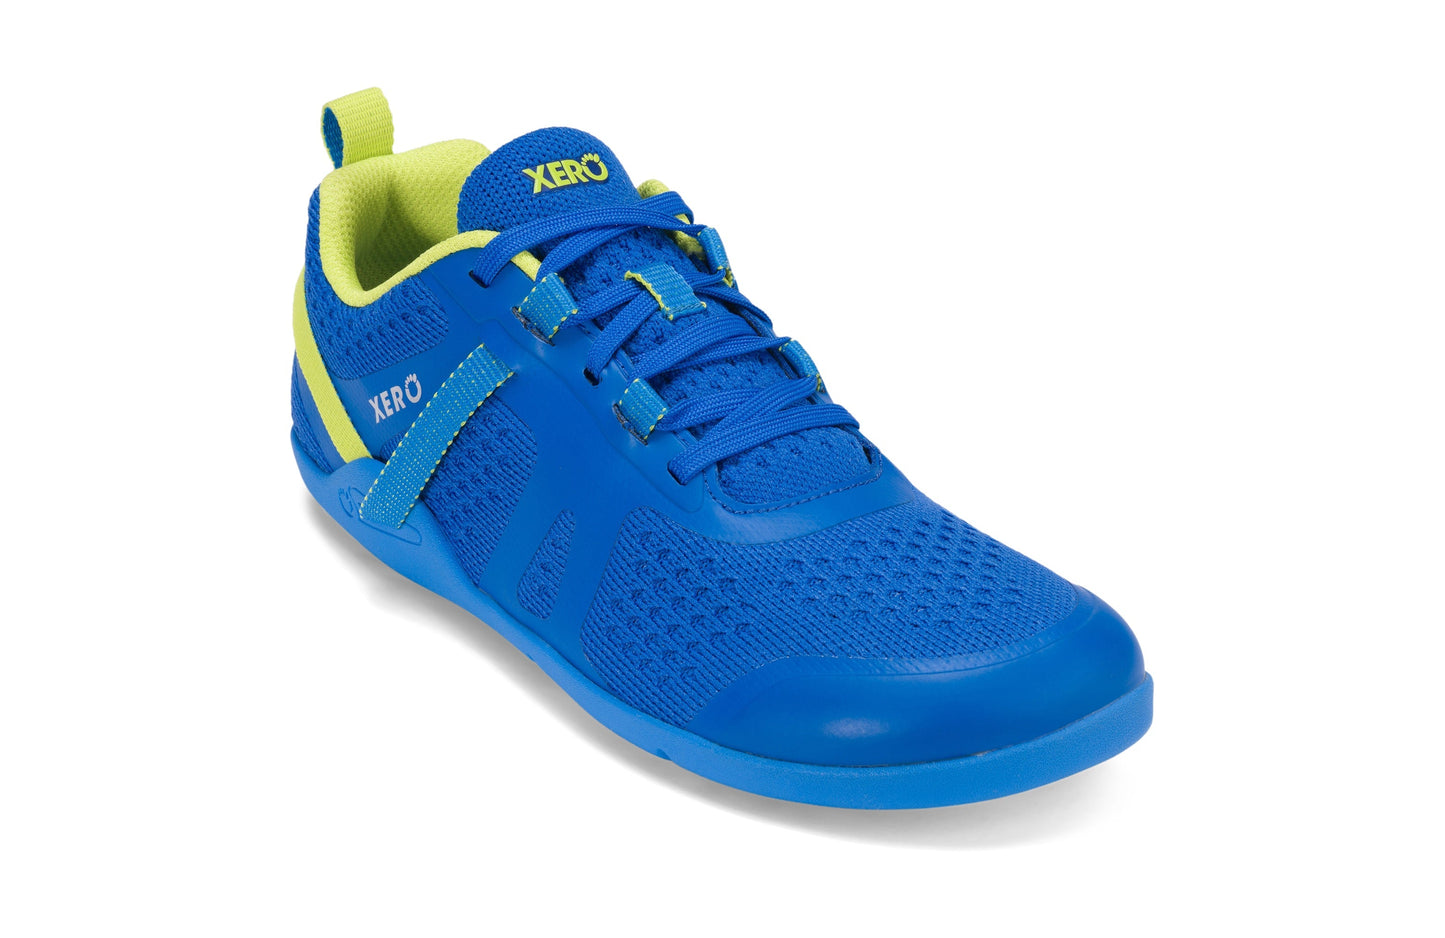 Xero Shoes Prio Neo Womens barfods athleisure trainer til kvinder i farven scuba / yellow, vinklet